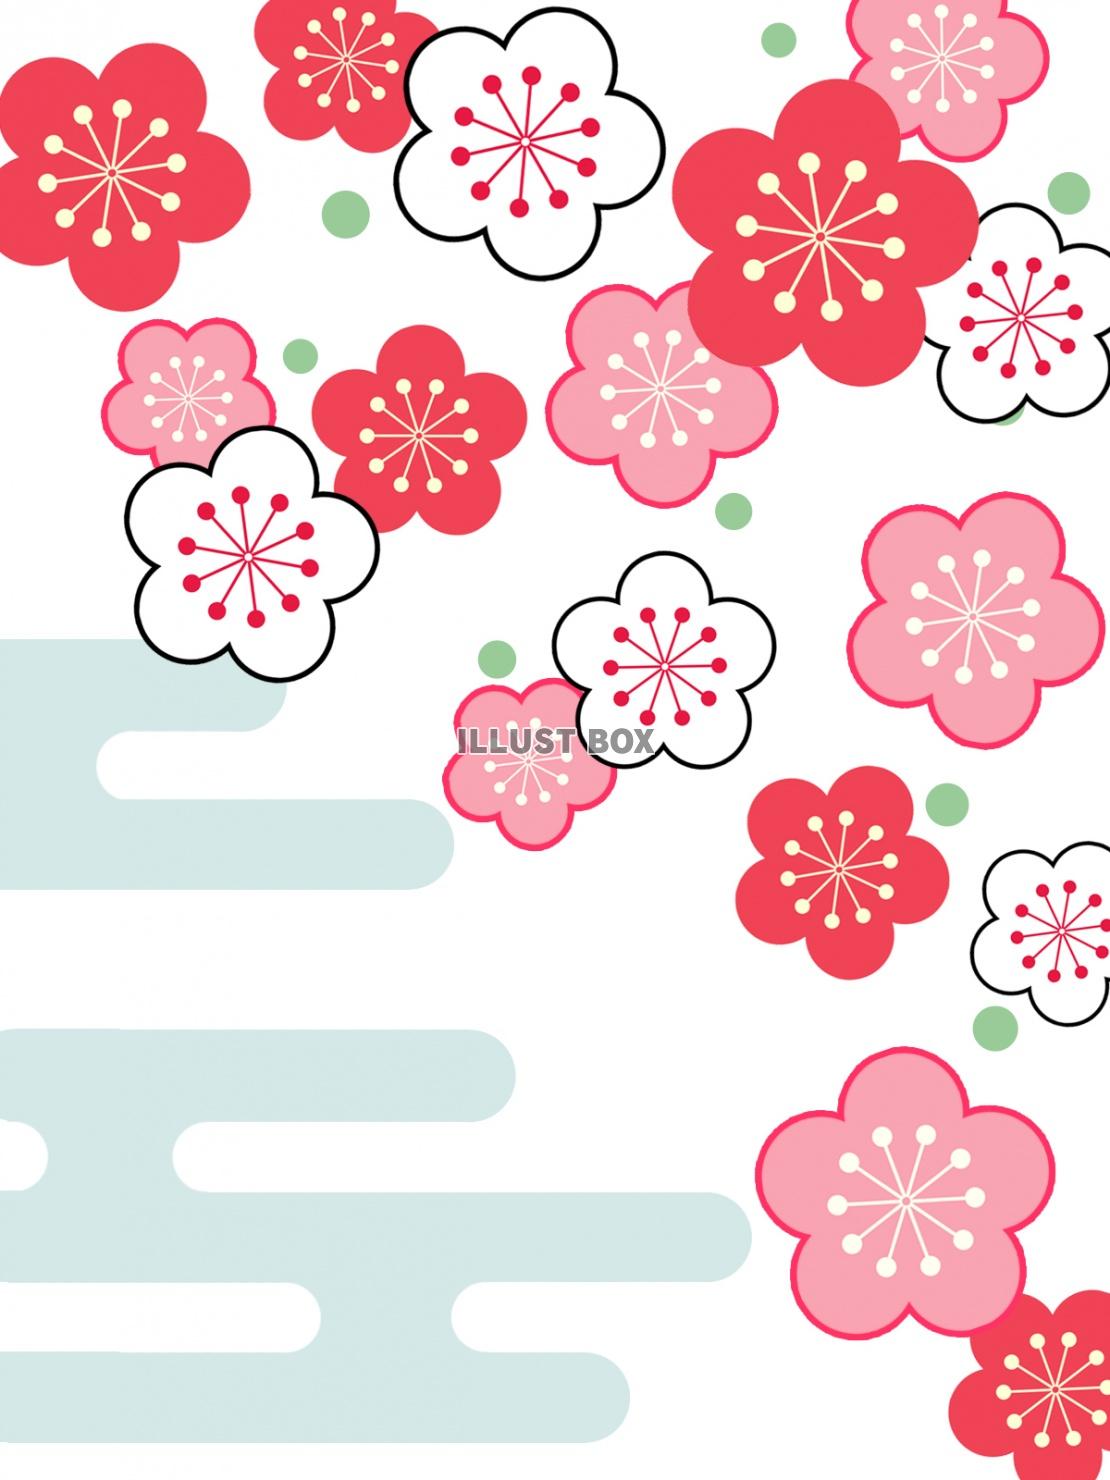 梅の花模様と霞文様の壁紙シンプル和柄背景イラスト